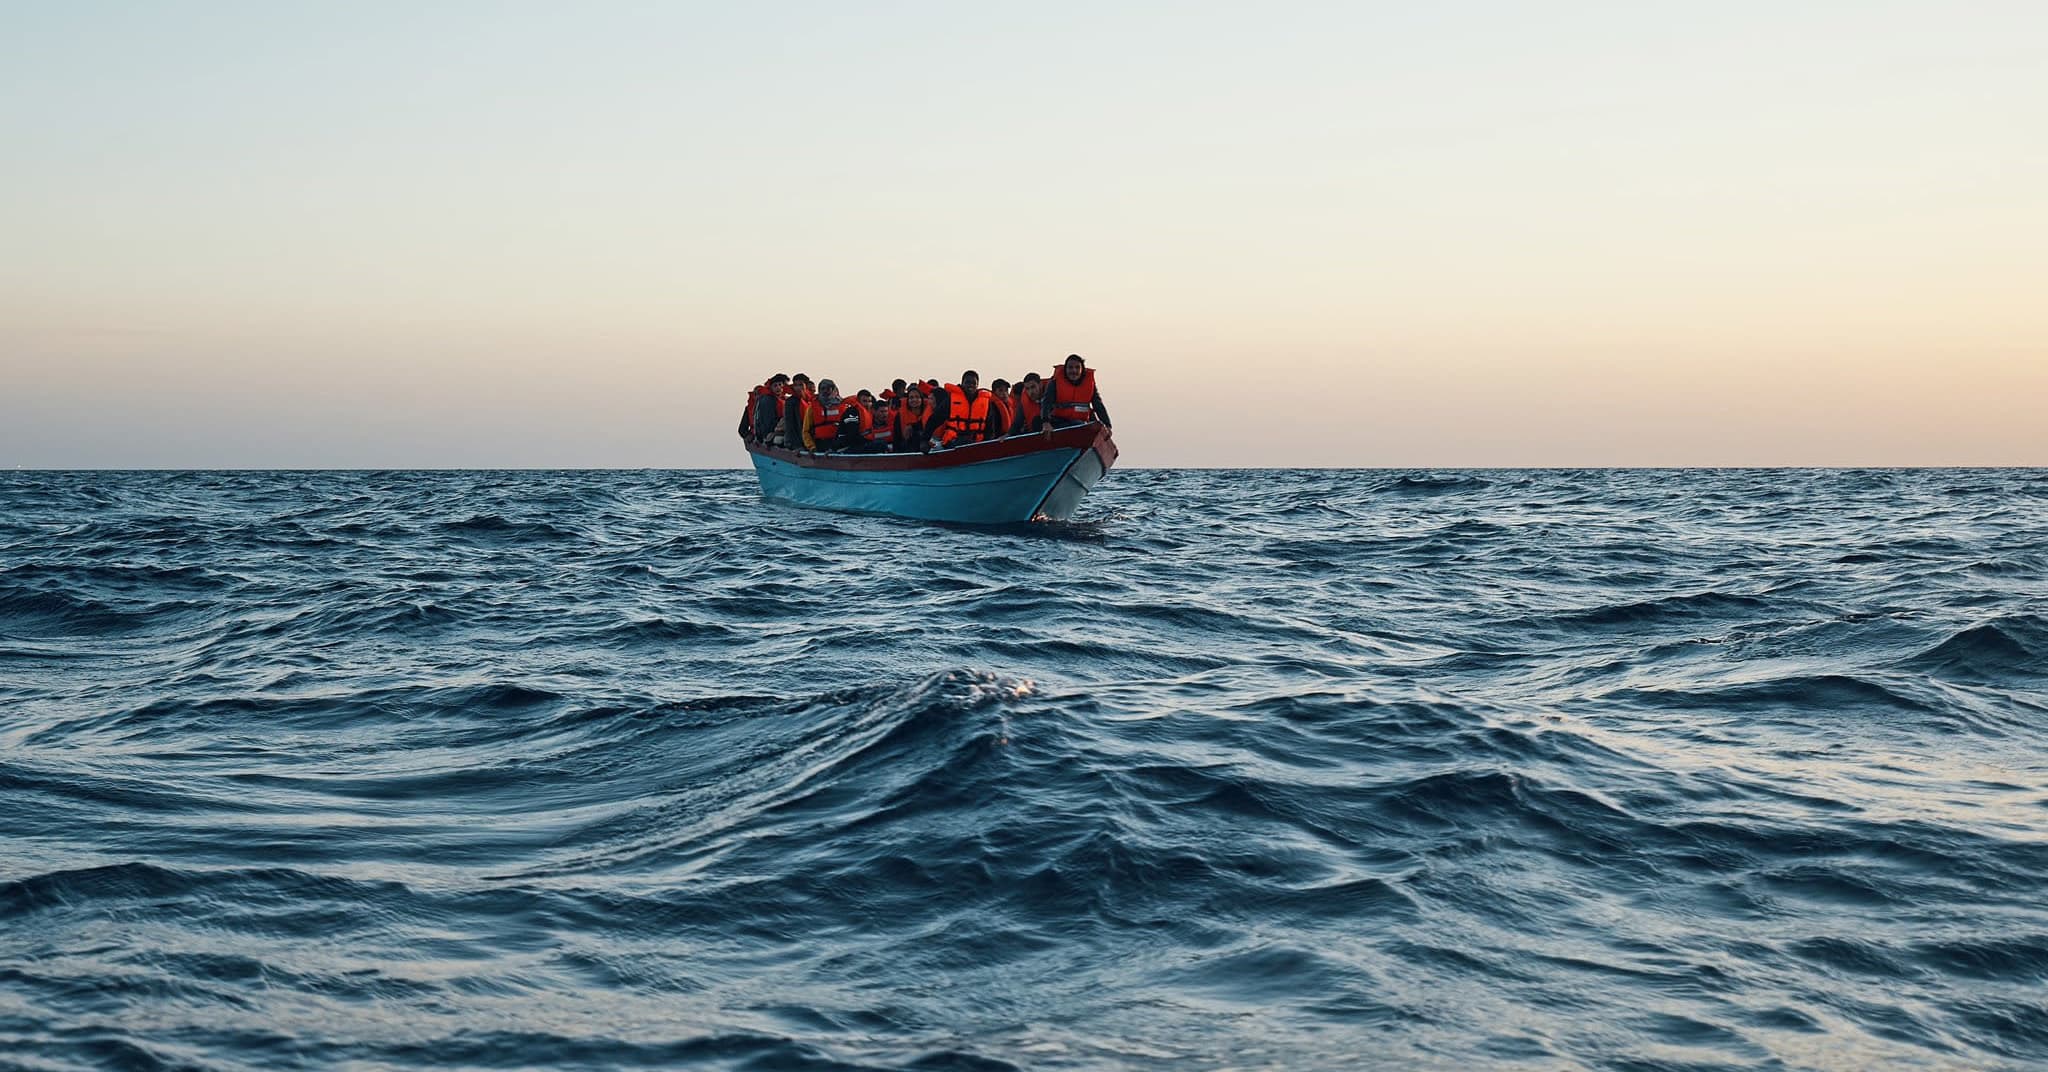 Kreikka syyttää turvapaikanhakijoita auttaneita avustustyöntekijöitä vakoilusta, ihmisoikeusjärjestöjen mukaan oikeudenkäynti on farssi